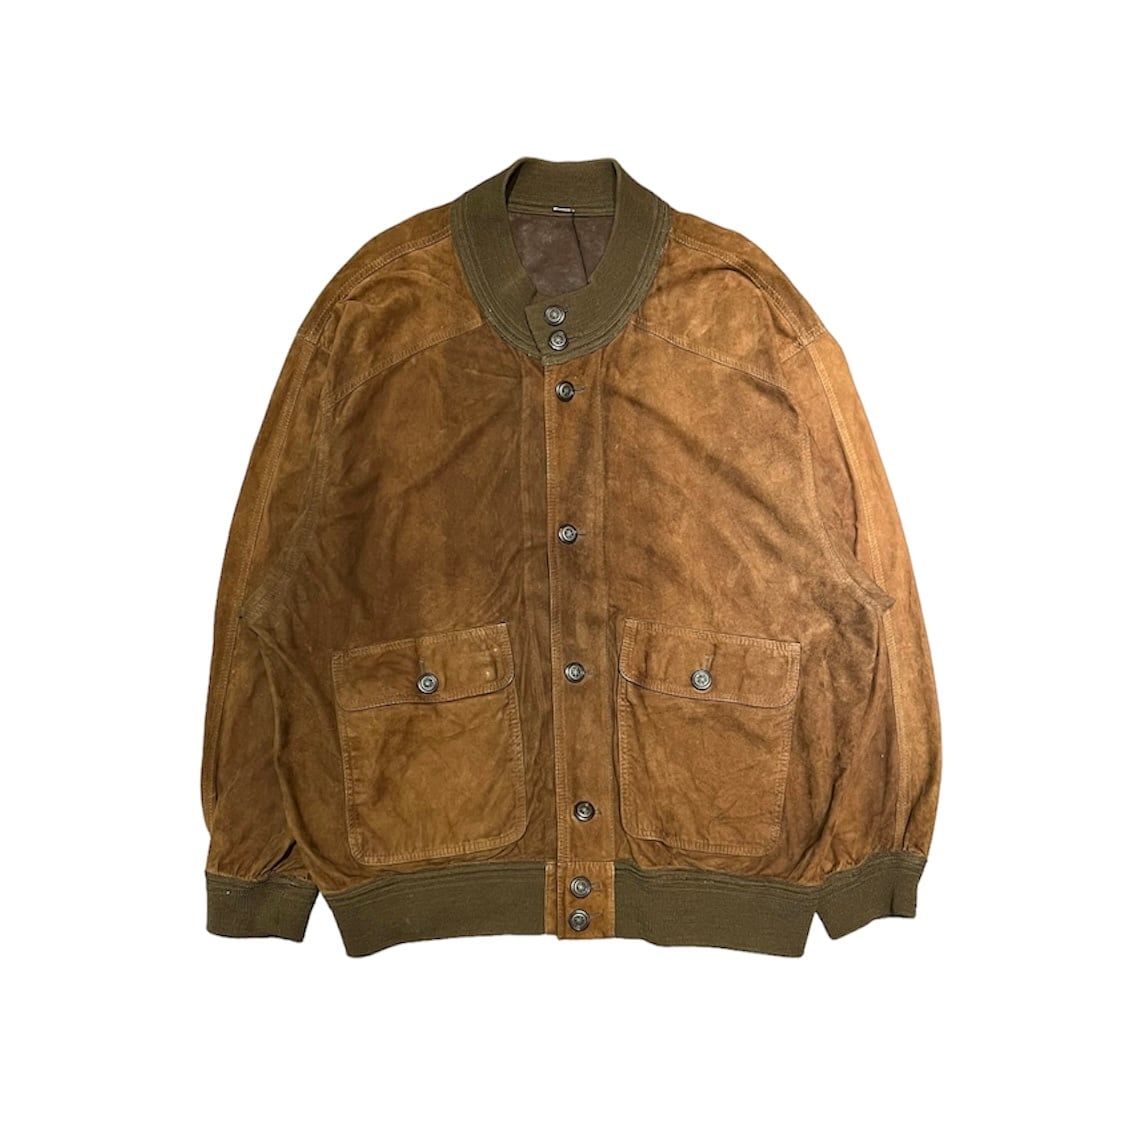 used valstear jacket